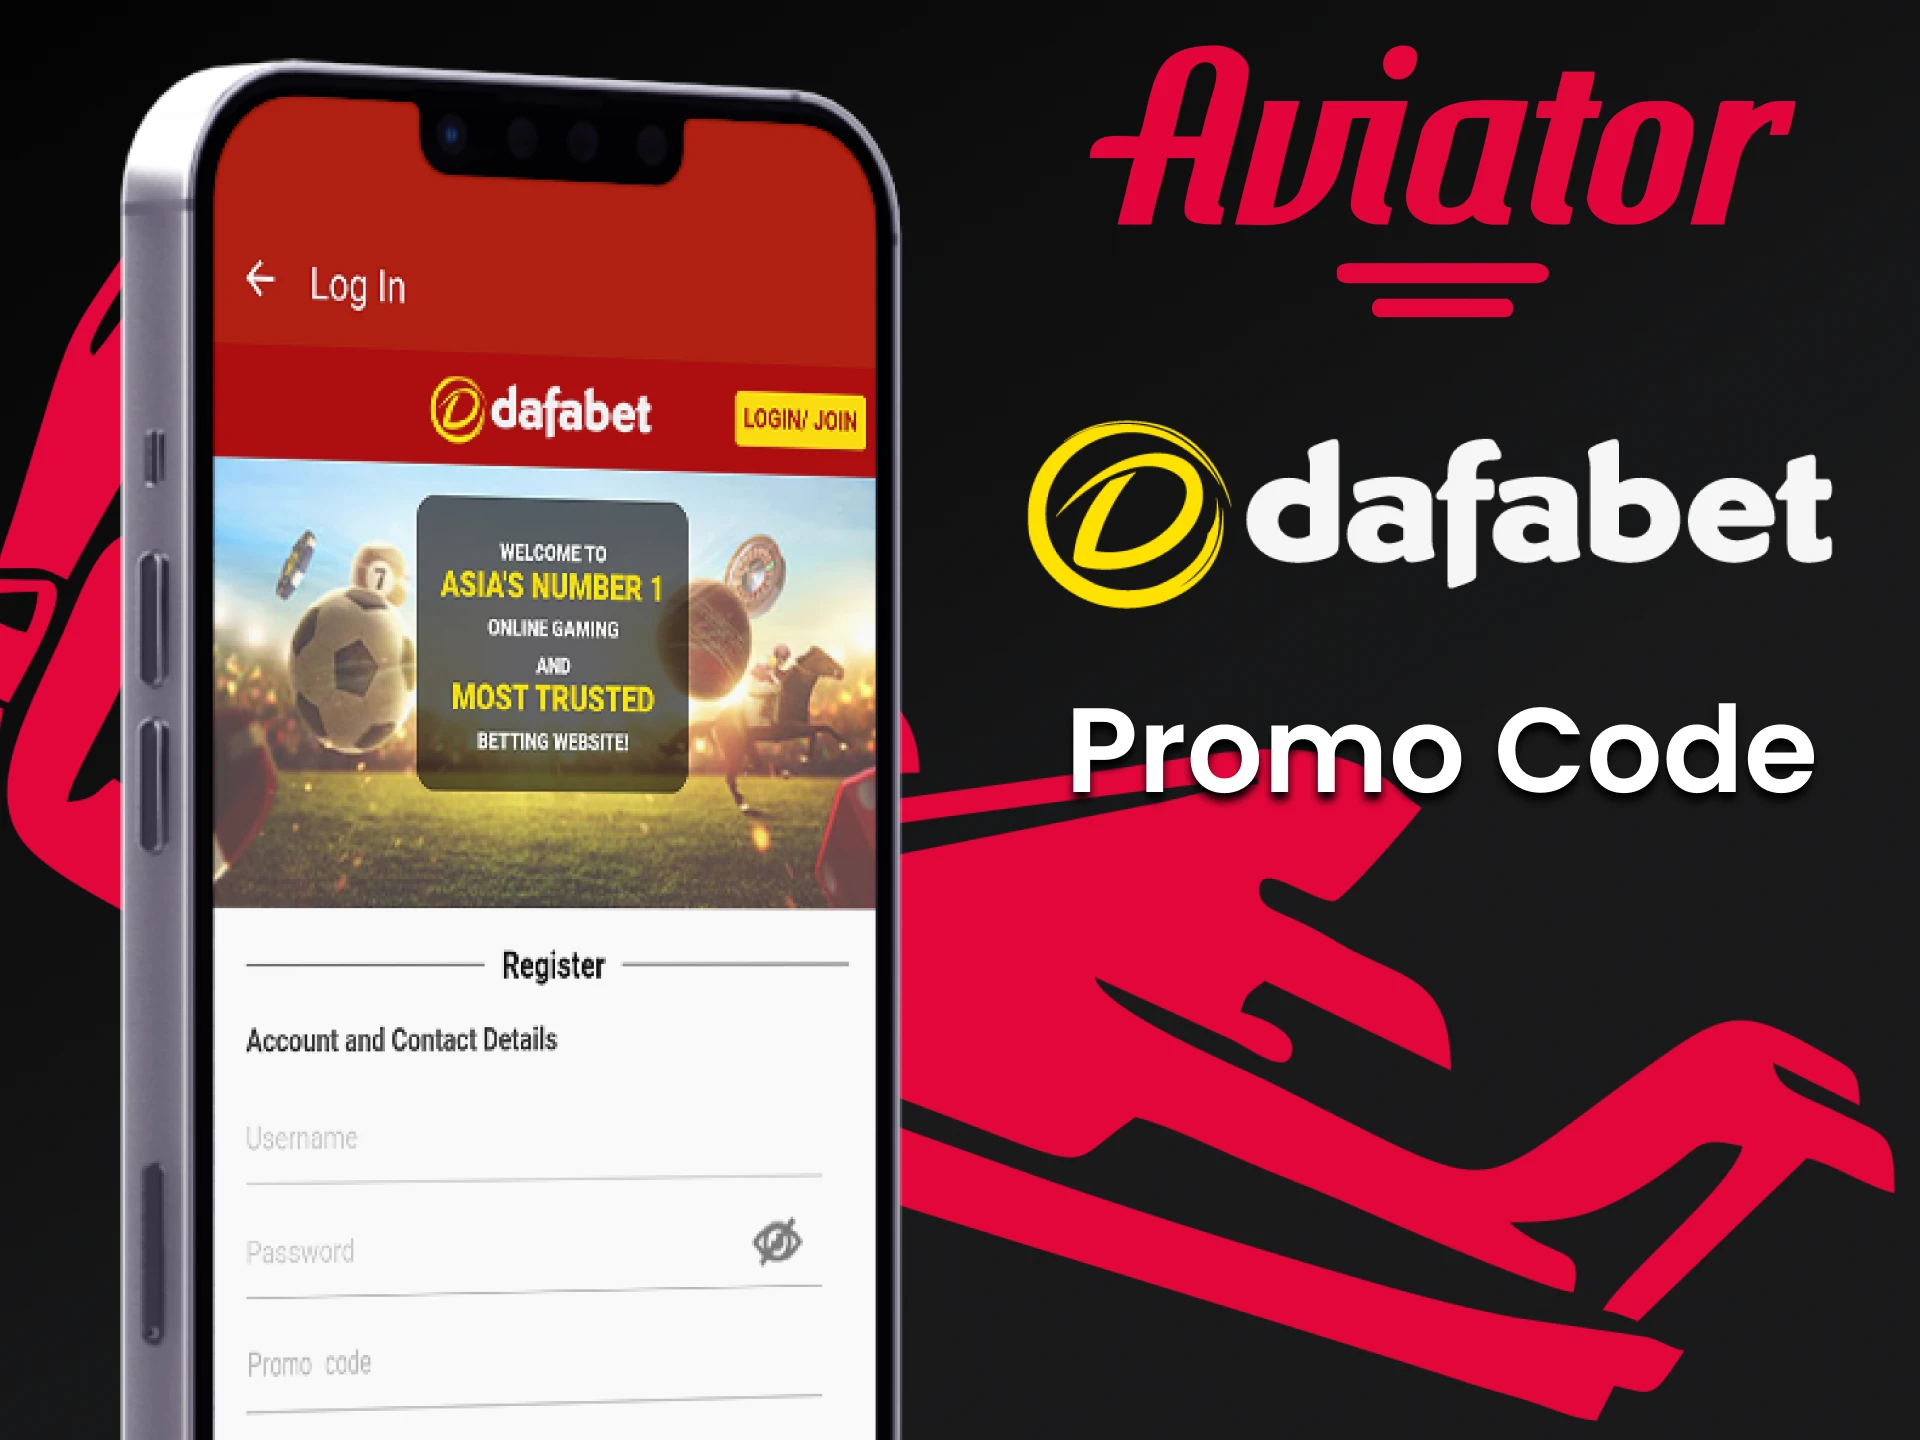 Encontre um código promocional da Dafabet para ganhar um bônus no jogo Aviator.